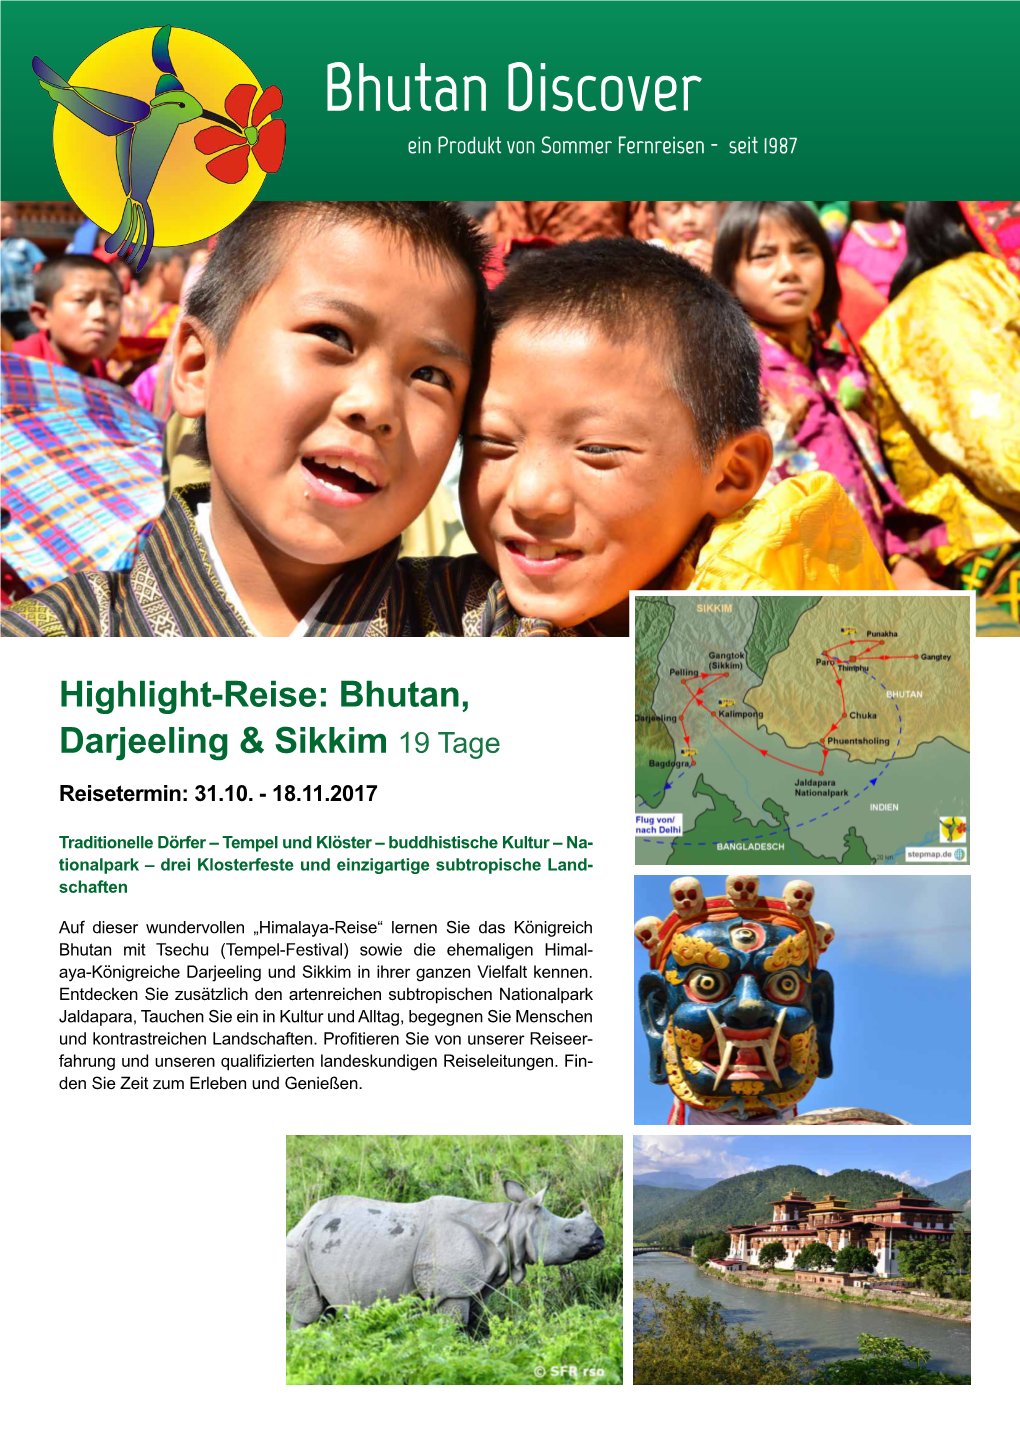 Bhutan, Darjeeling & Sikkim